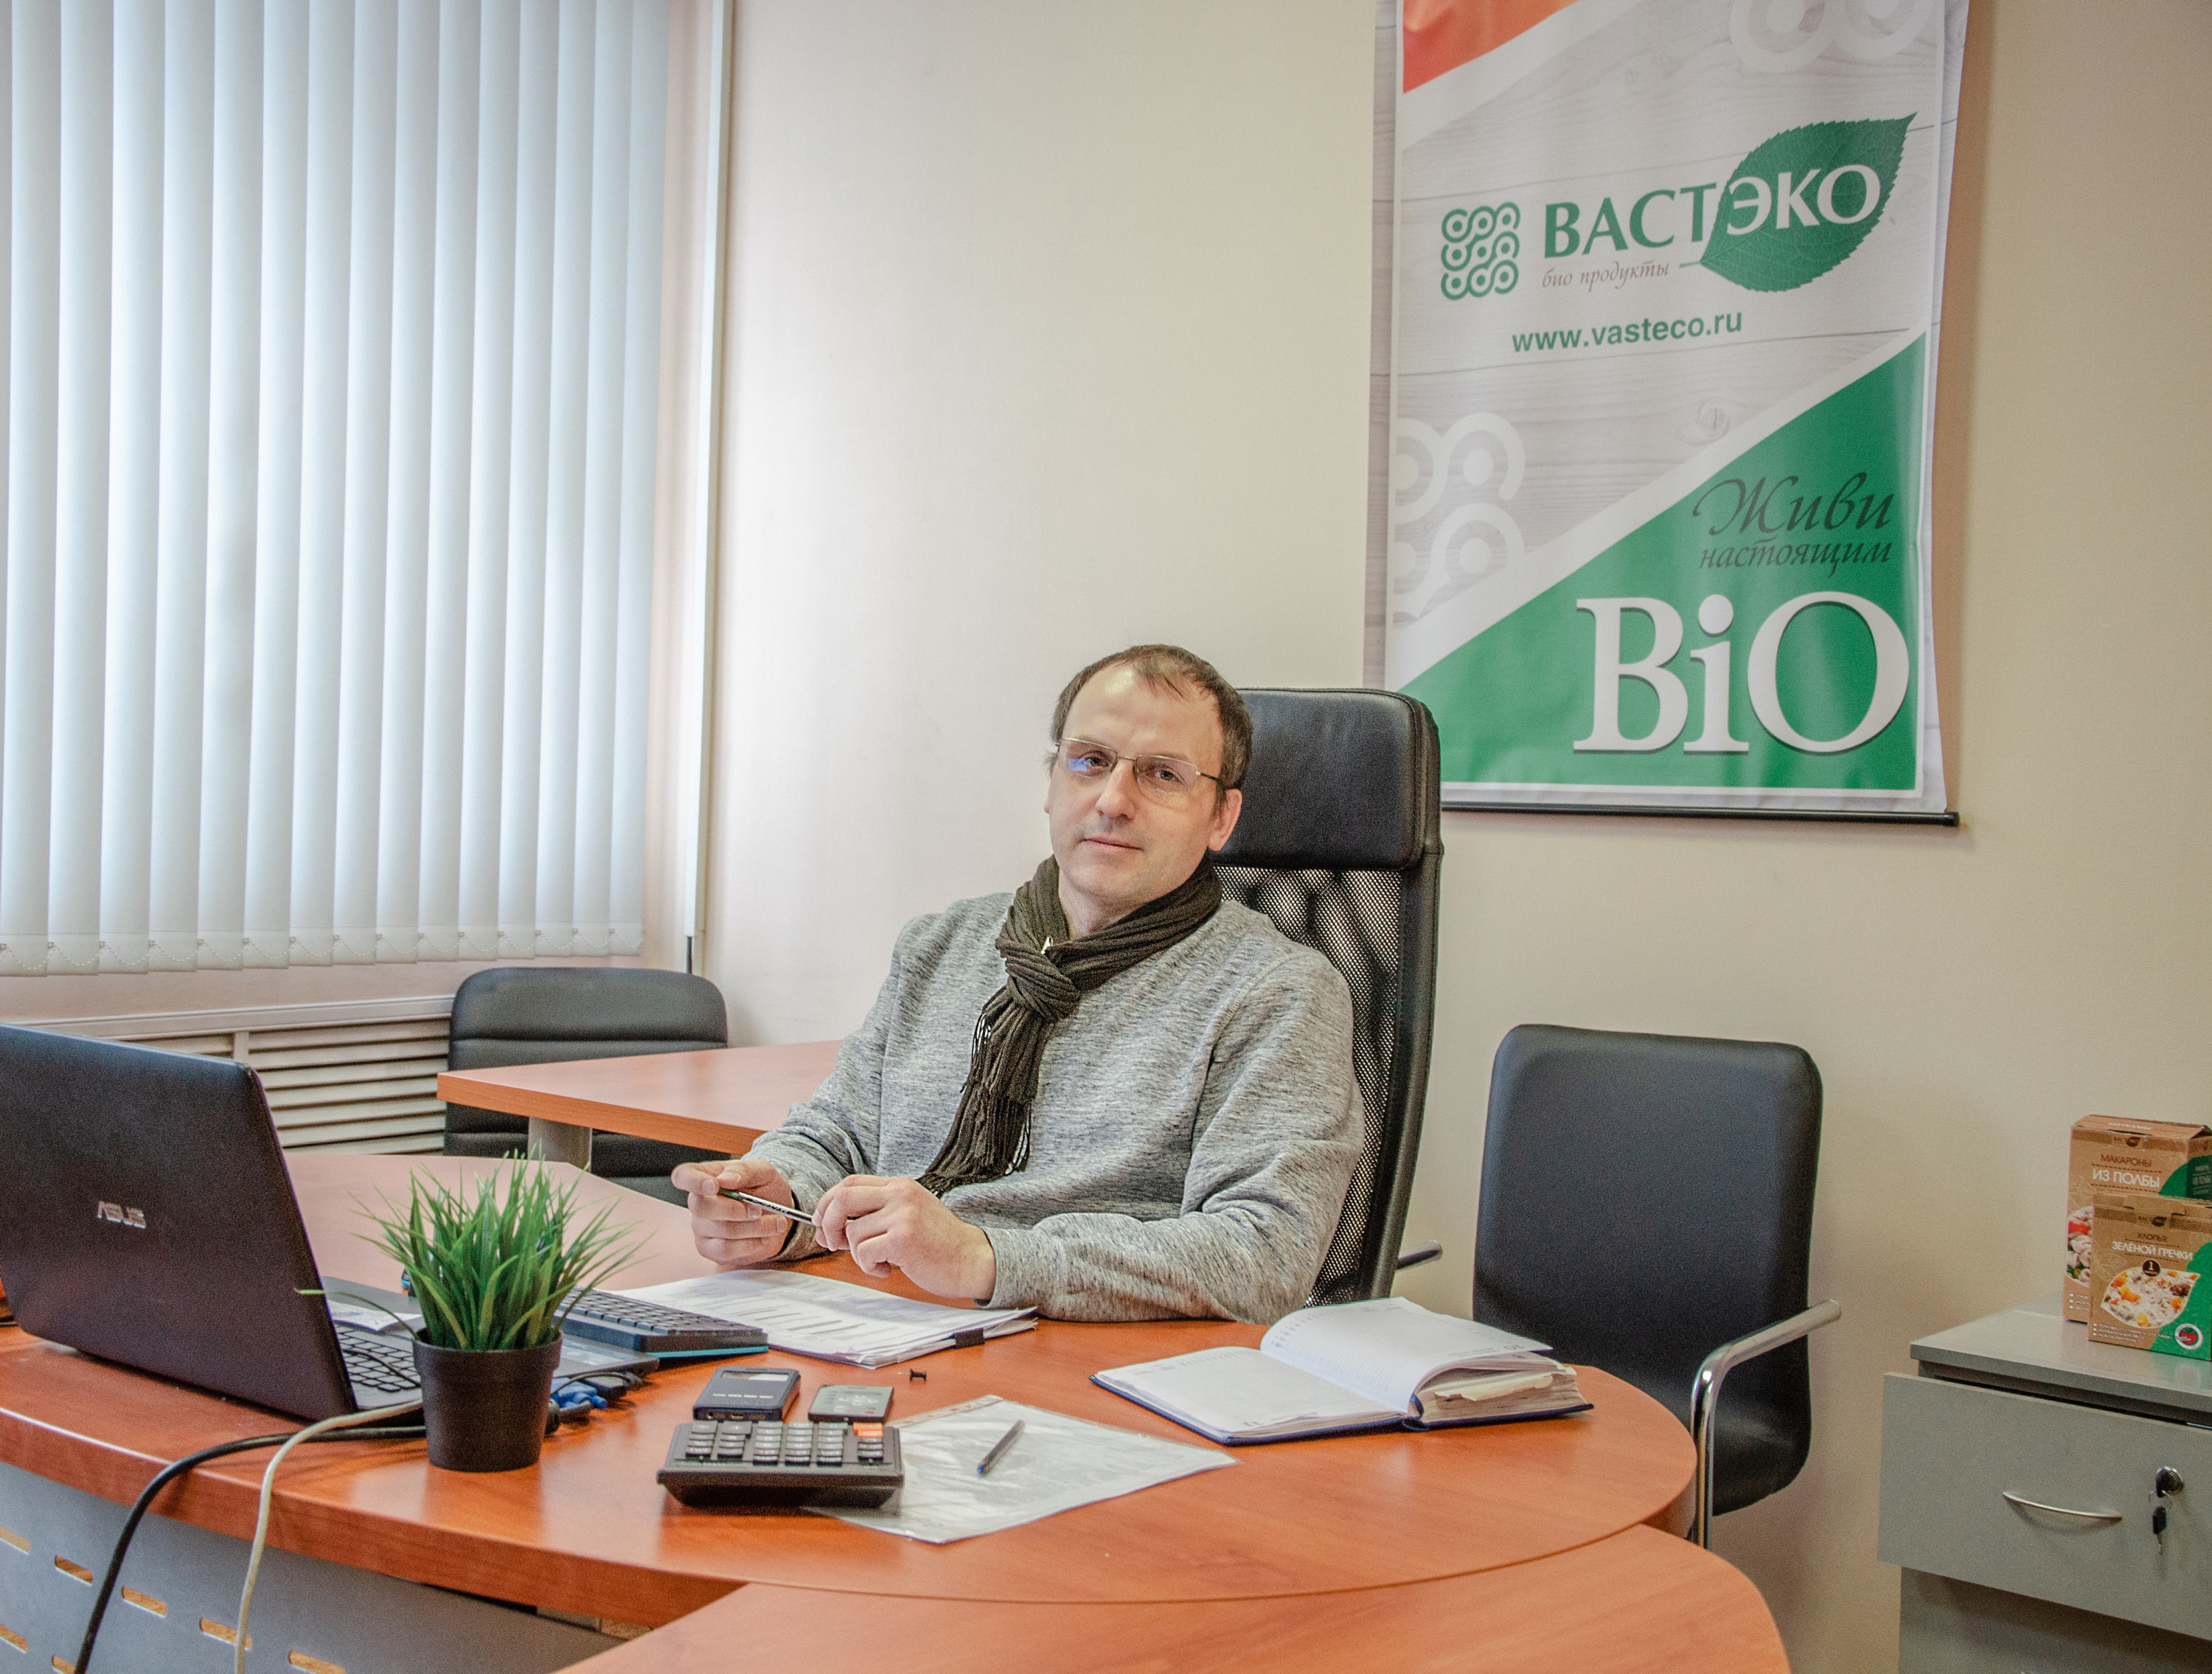 Исполнительный директор компании ВАСТЭКО Дмитрий Андреев.